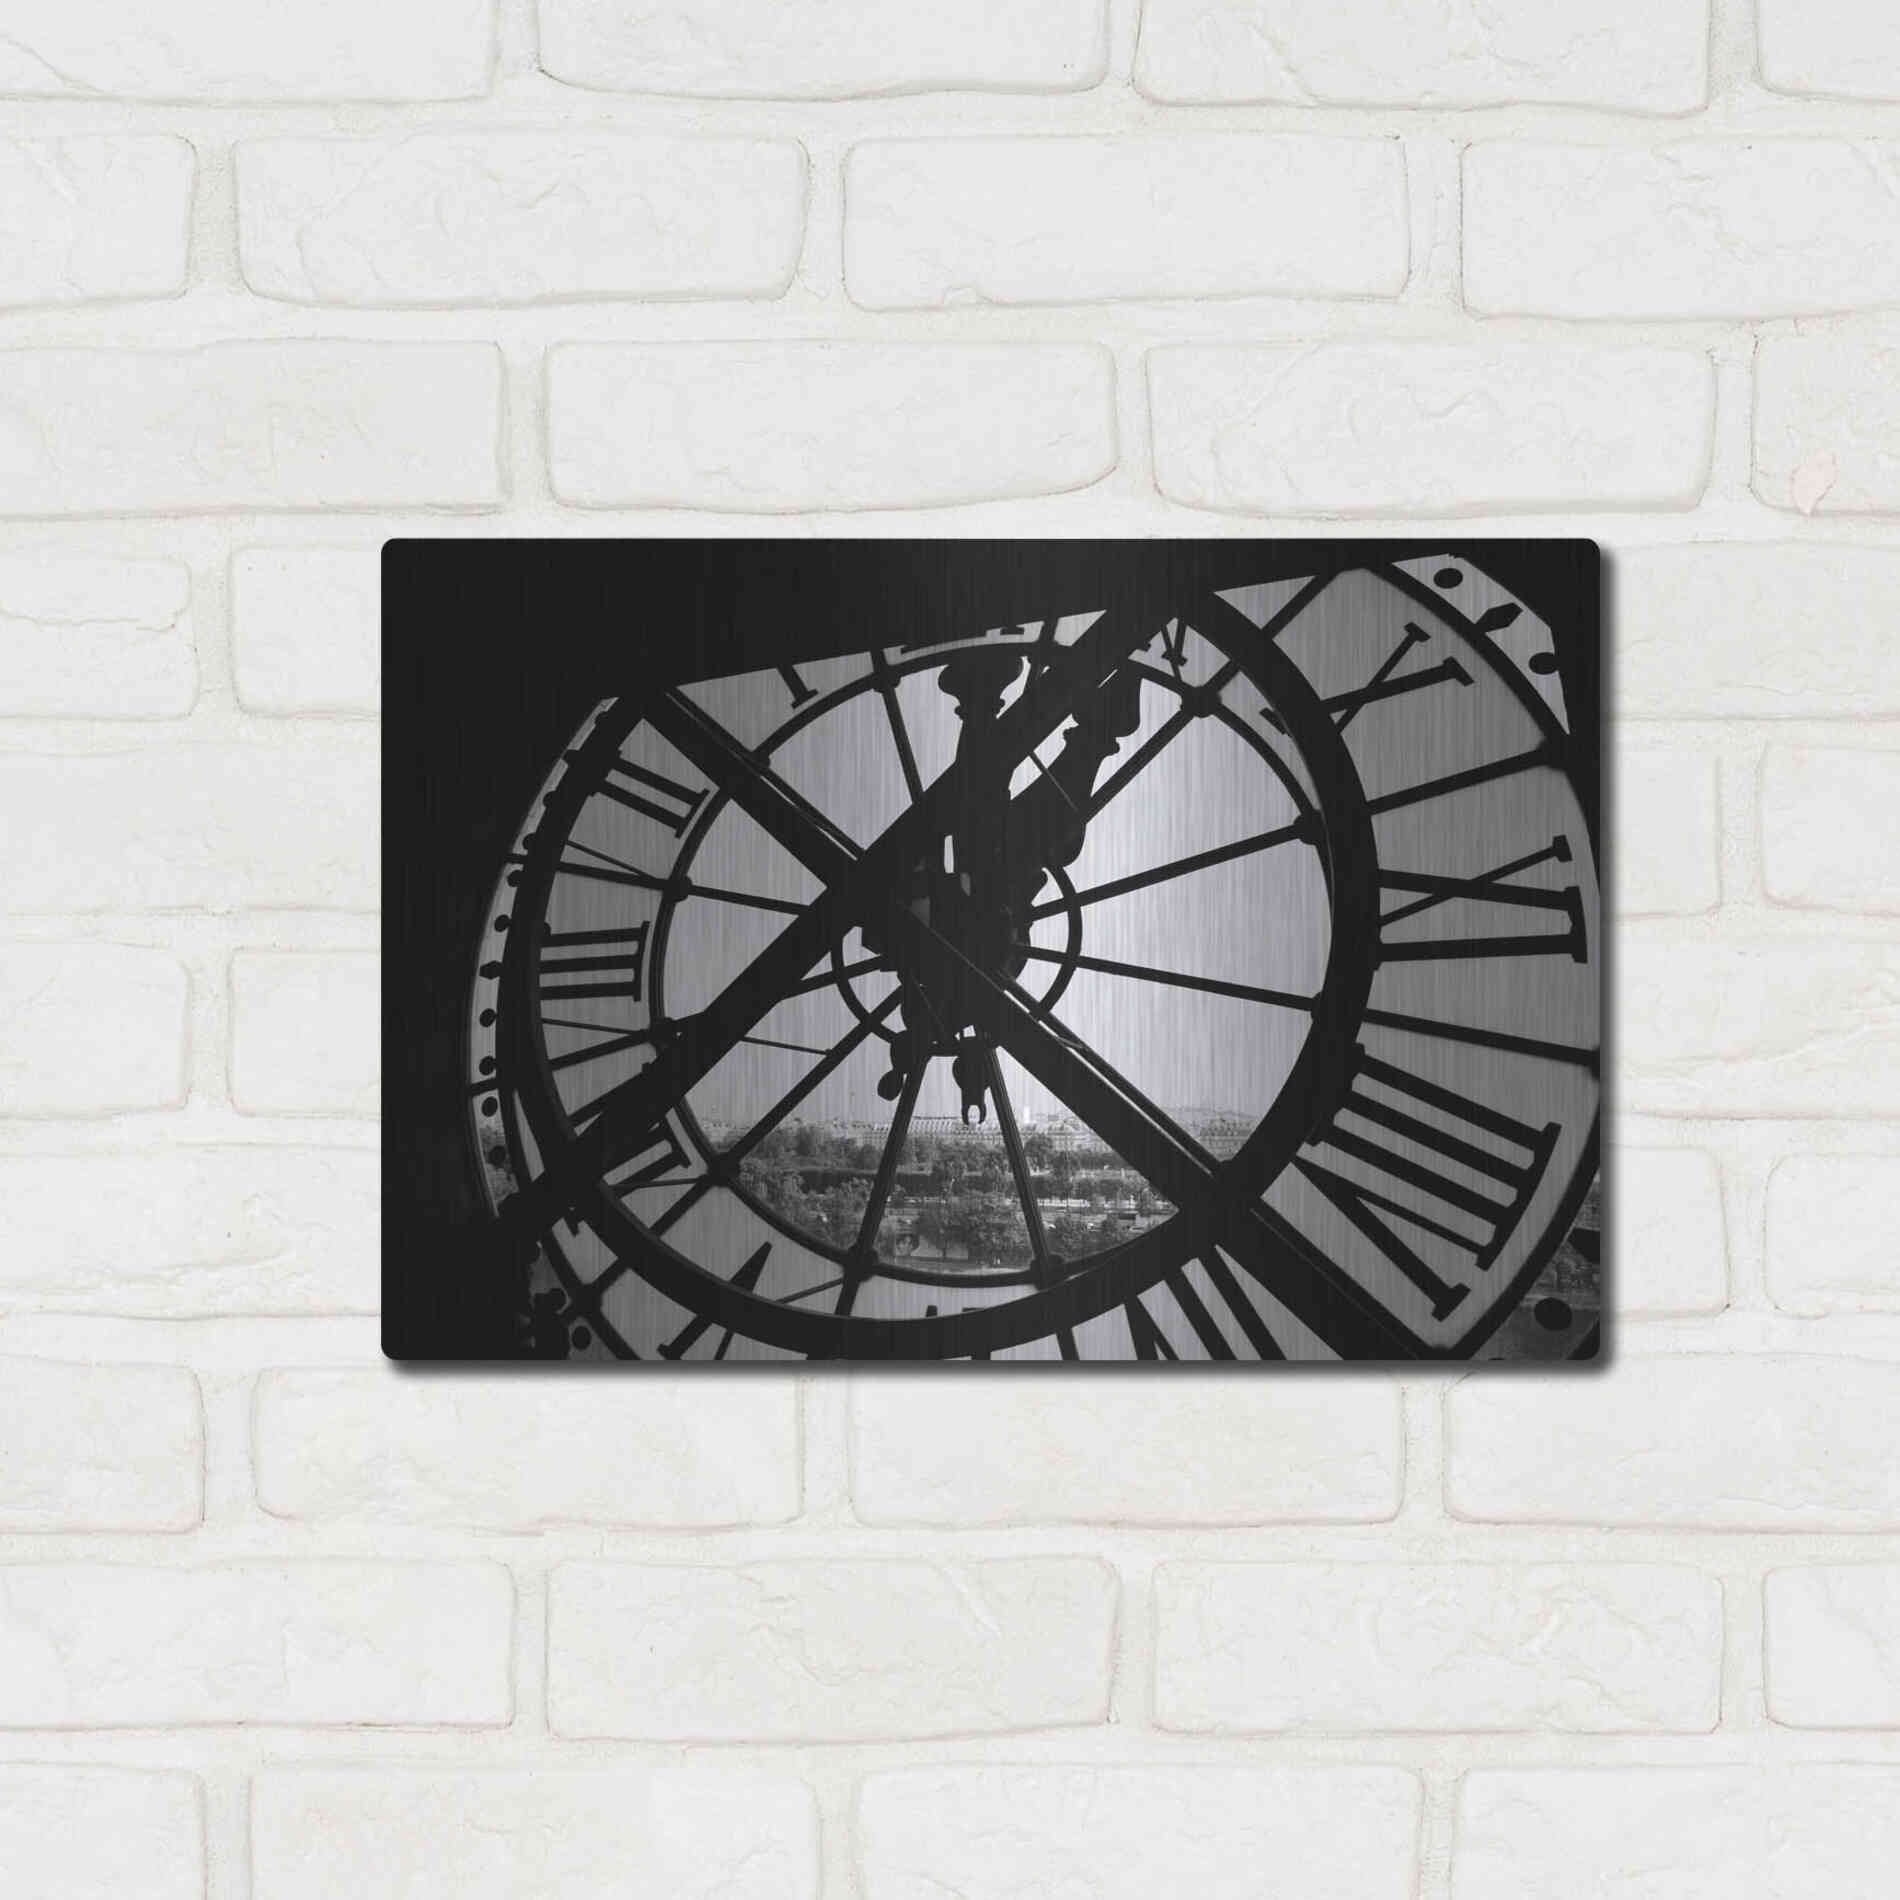 Luxe Metal Art 'Clock Tower' by Design Fabrikken, Metal Wall Art,16x12